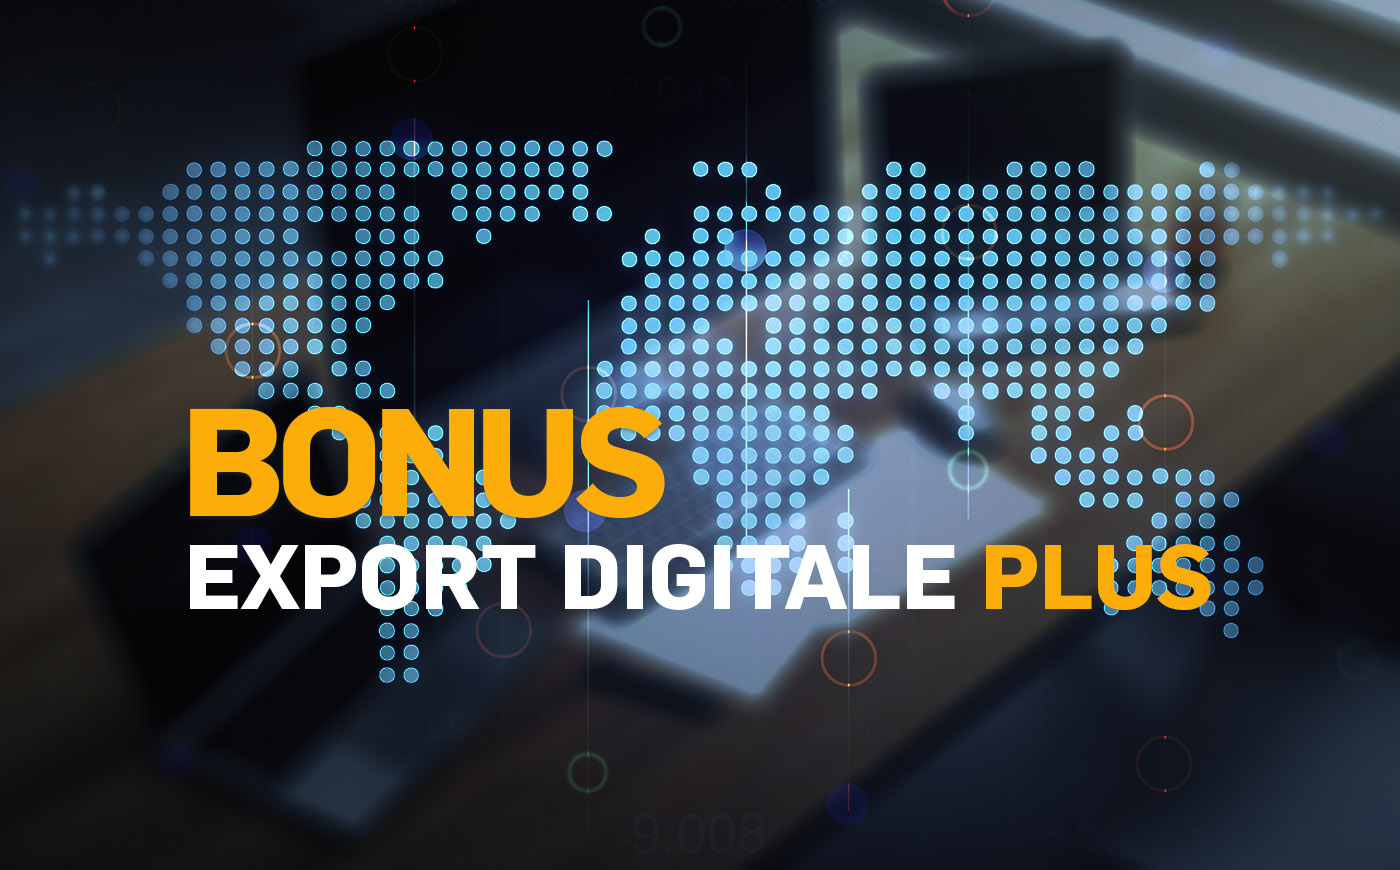 Bonus Export Digitale Plus: al via il finanziamento a fondo perduto per le soluzioni digitali e consulenziali